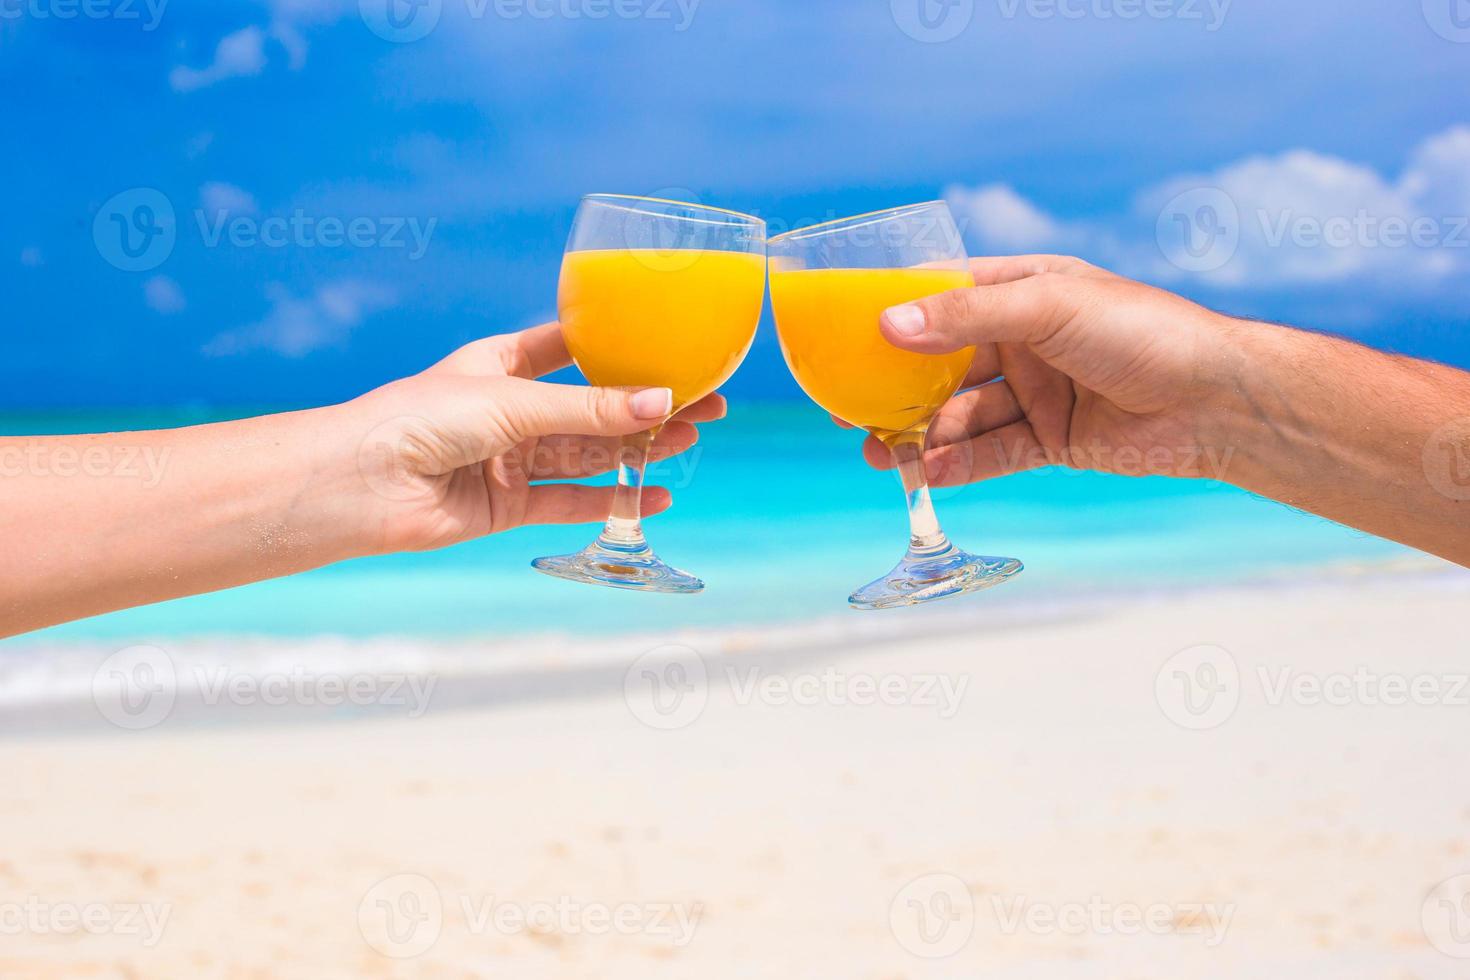 deux mains tiennent des verres avec du jus d'orange fond bleu ciel photo